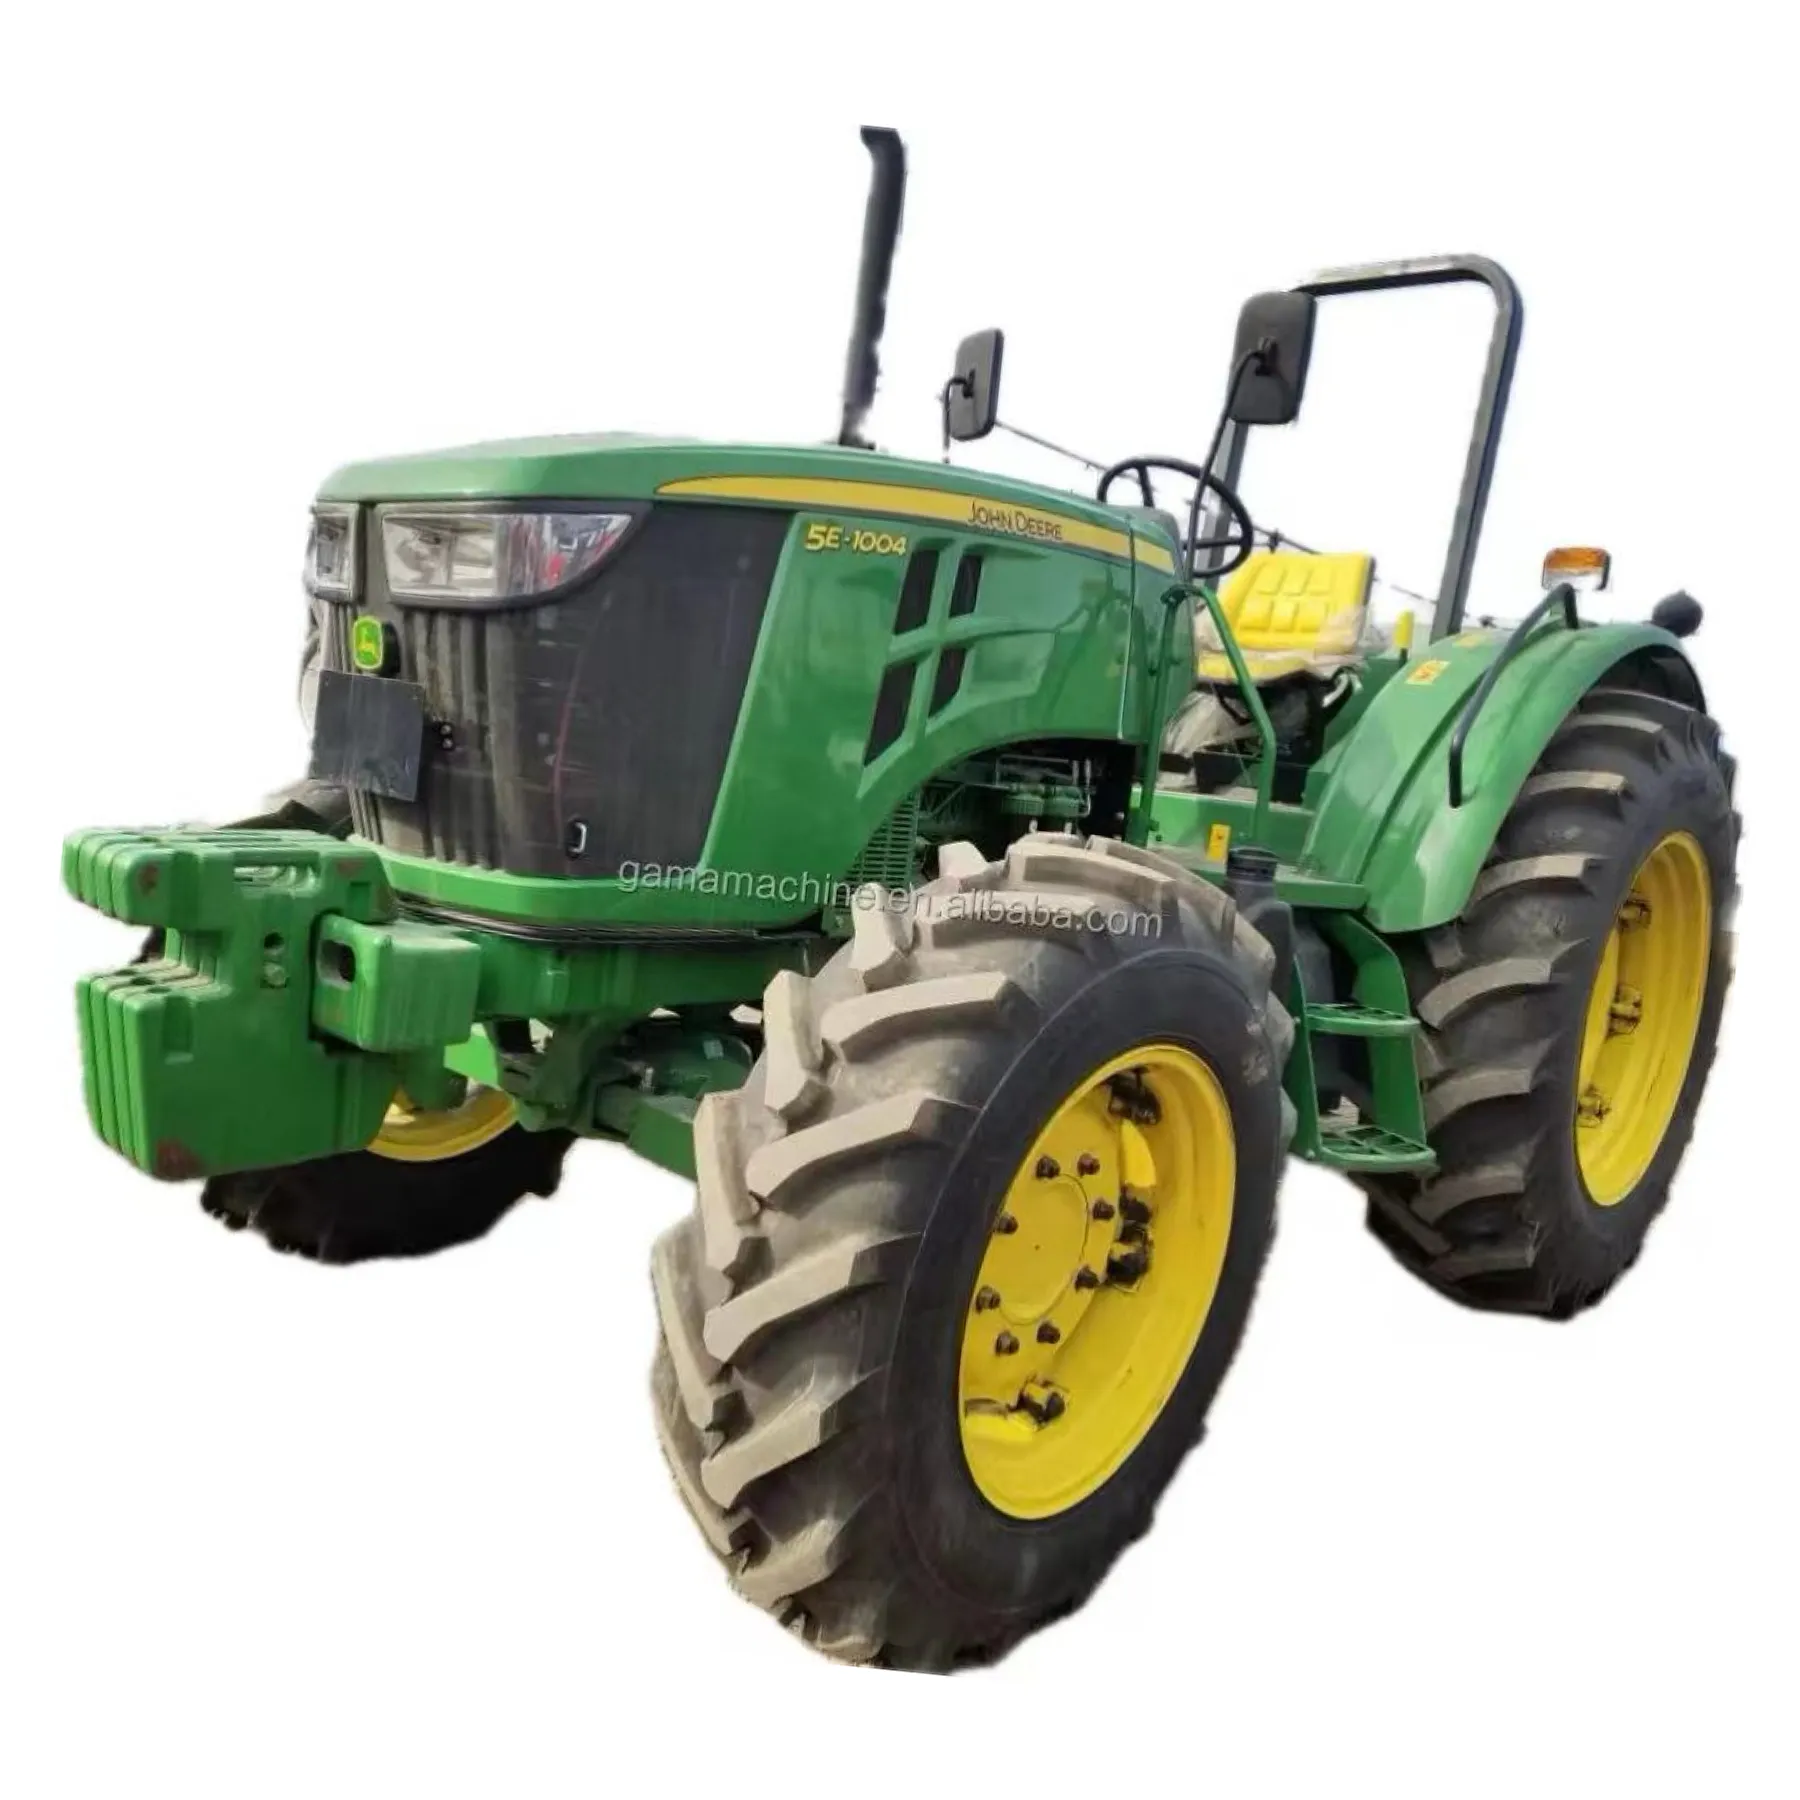 Tractores agrícolas John Deer 5E-1004 usados en Turquía, tractores agrícolas 4x4 con arado, tractor cargador frontal